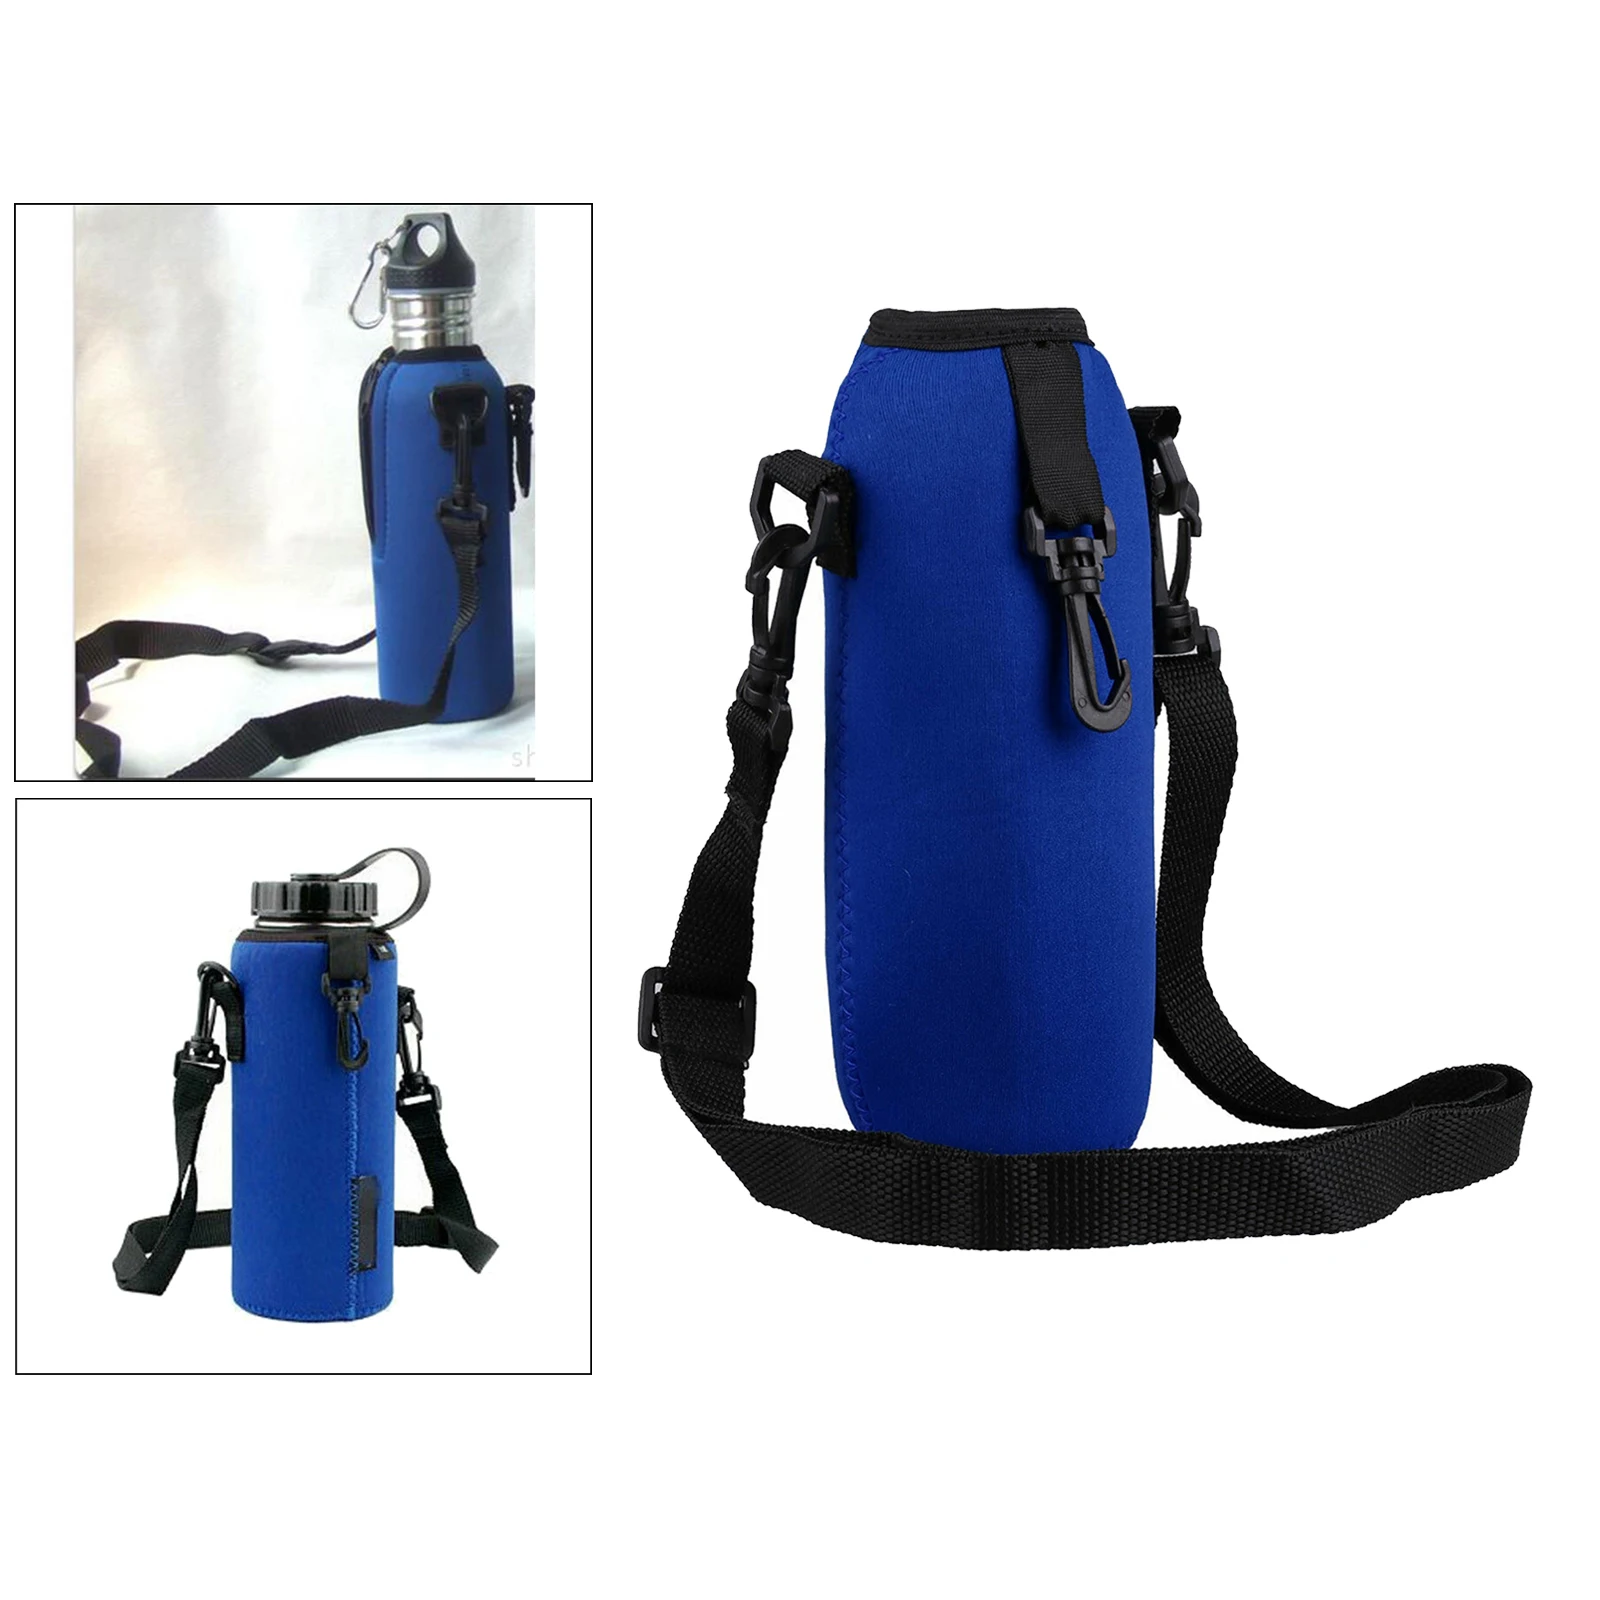 750ml Neoprene Water Bottle Carrier, Insulated Water Bottle Holder Bag Case